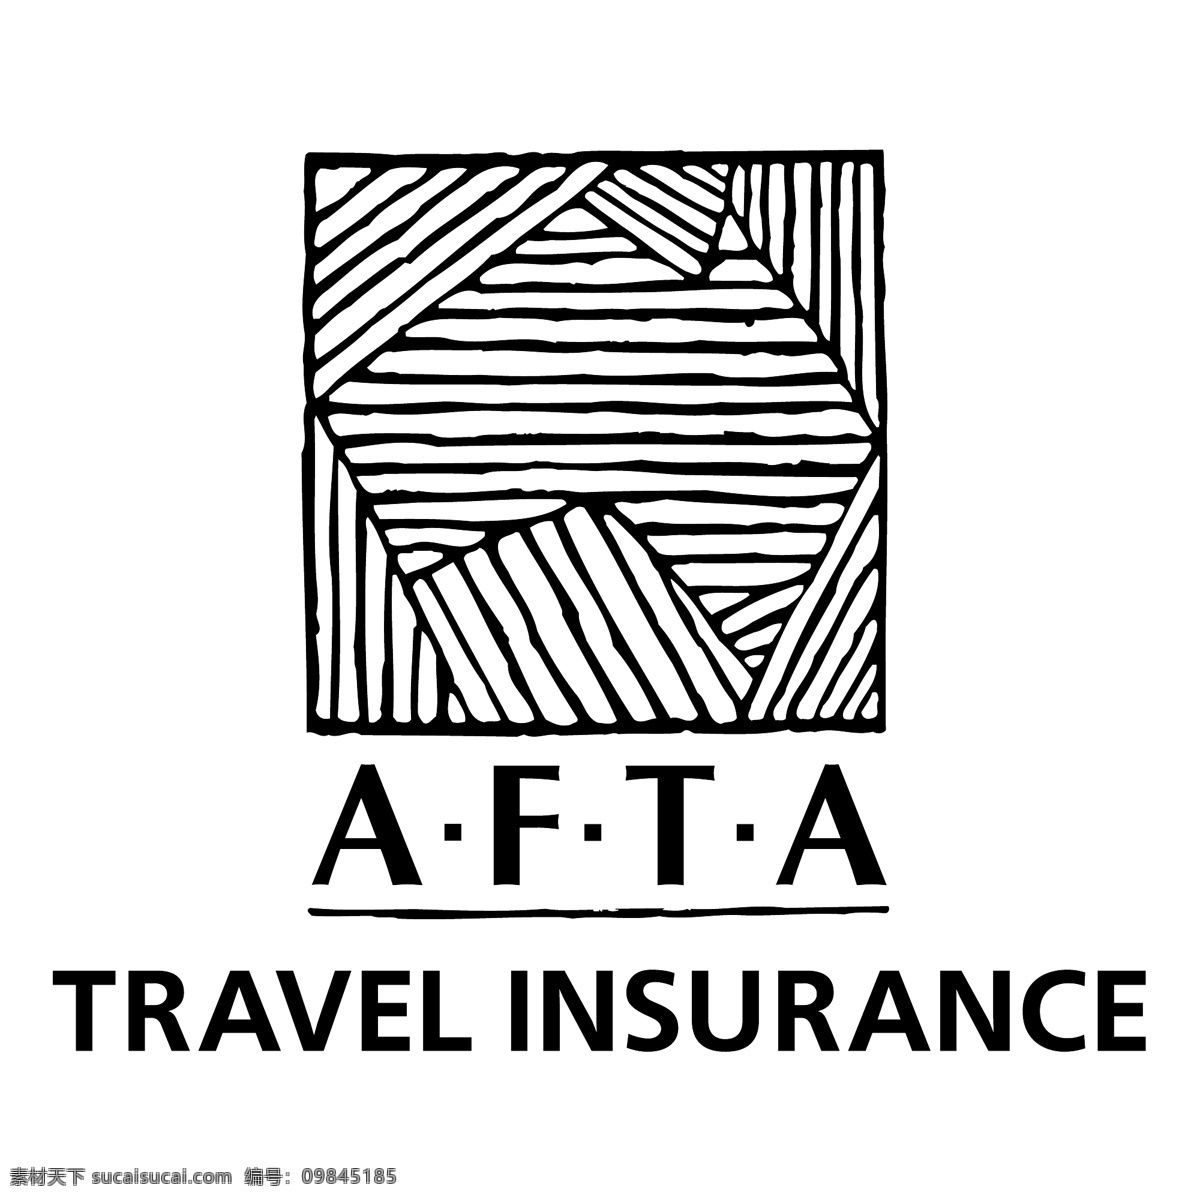 东盟自由贸易区 旅游保险 自由 贸易 旅行 保险 标志 东盟 psd源文件 logo设计